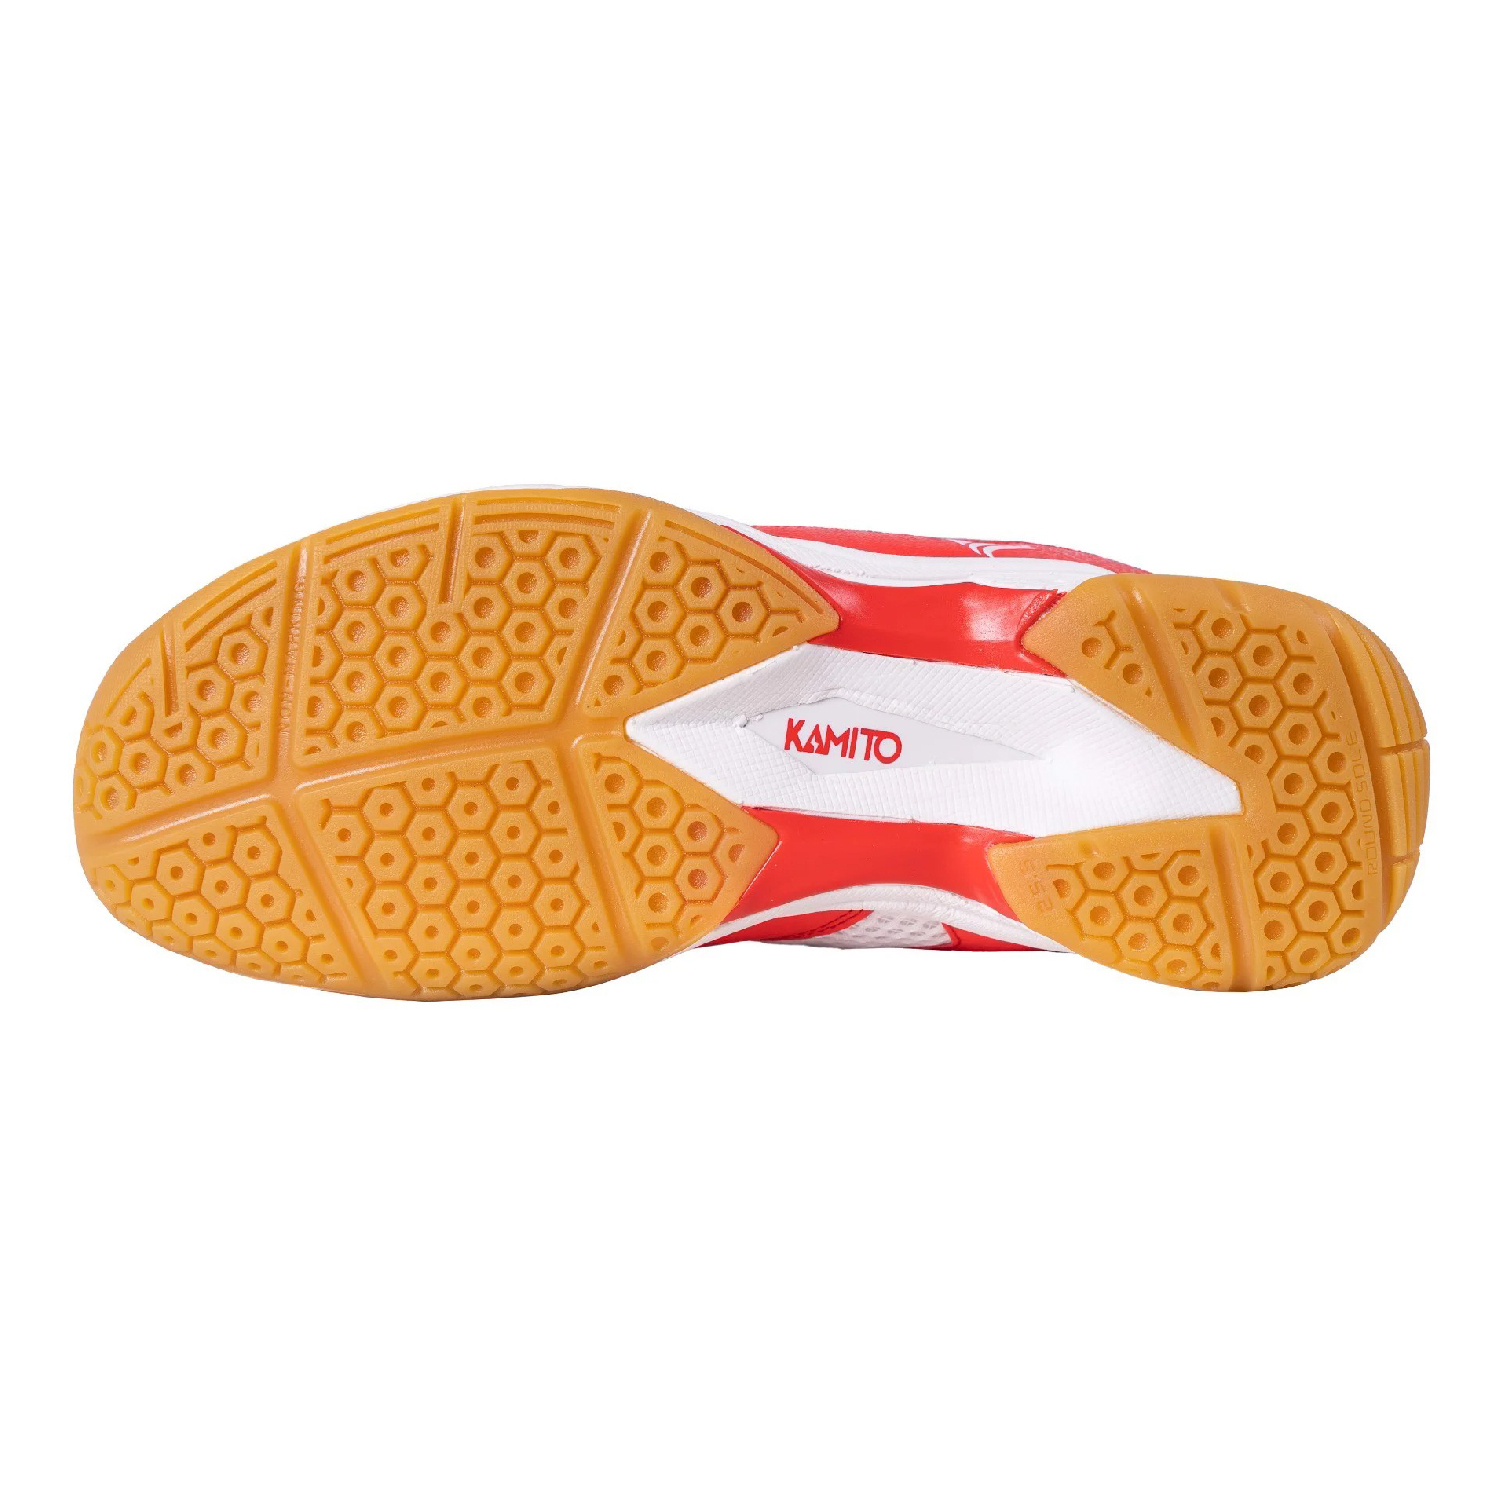 Giày cầu lông Kamito Calo - Trắng đỏ chính hãng